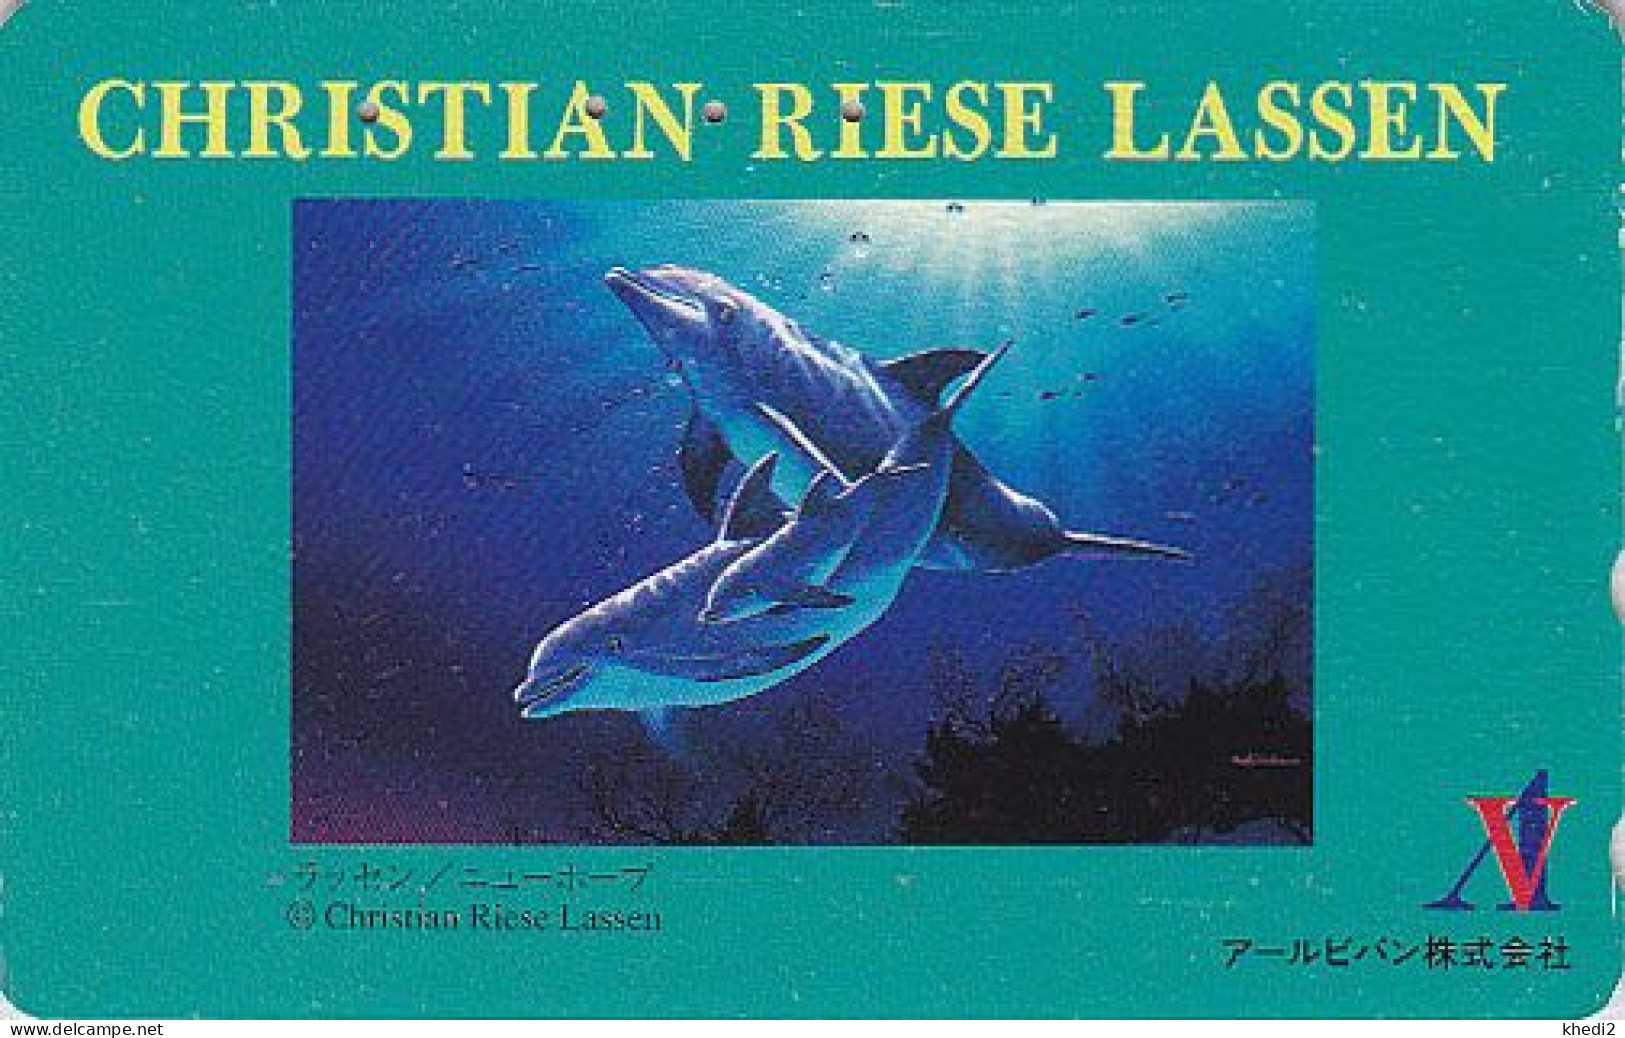 TC JAPON / 110-011 - Série Peinture CHRISTIAN RIESE LASSEN - ANIMAL DAUPHIN érotique - EROTIC DOLPHIN JAPAN Pc 02 - Delfini